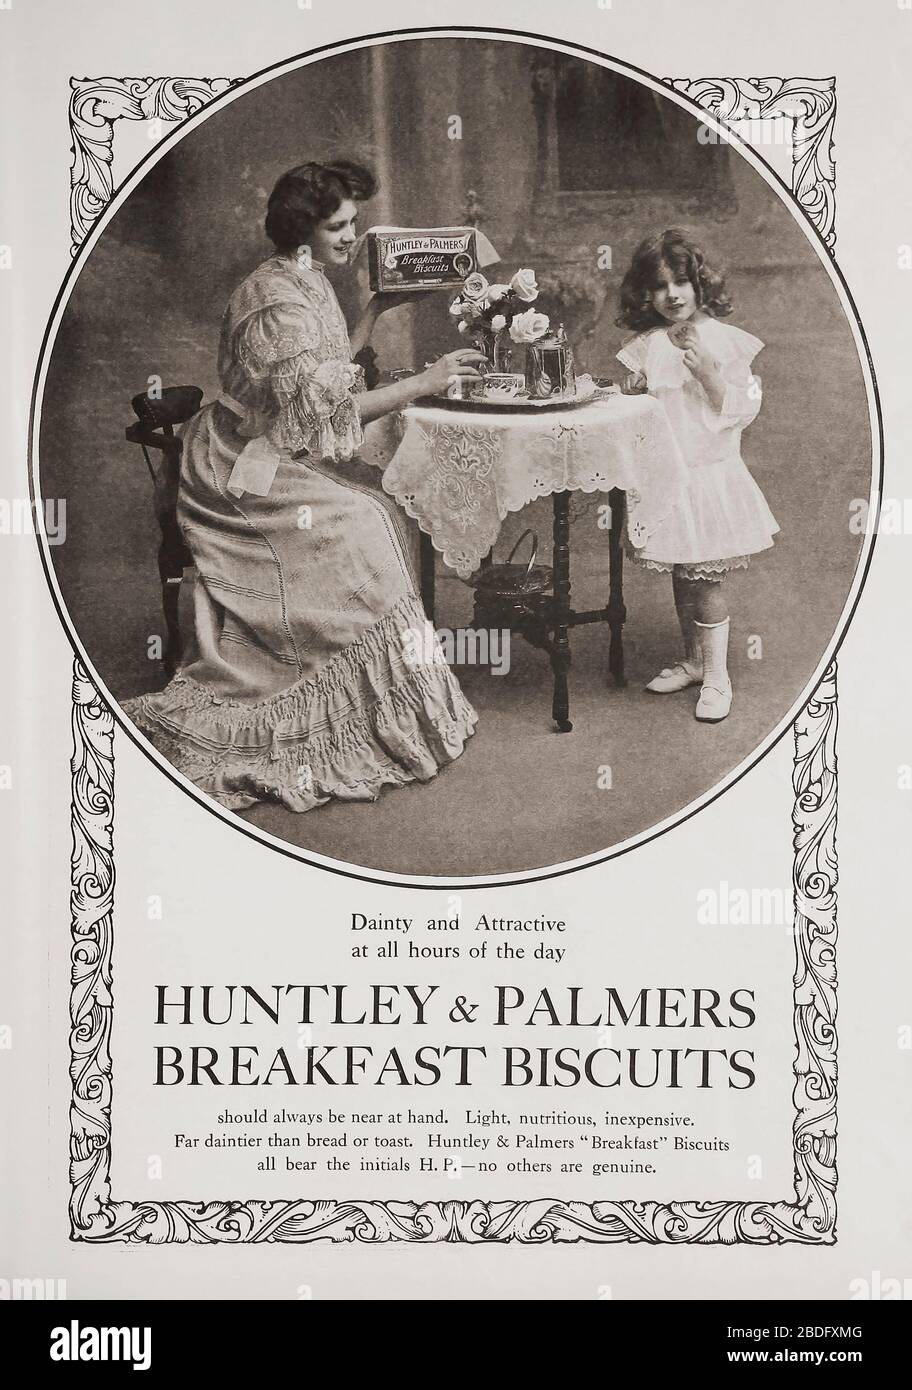 ÉDITORIAL Publicité pour Huntley & Palmers Breakfast biscuits dans l'édition de juin 1907 du Graphic, un hebdomadaire illustré, publié à Londres de 1869 à 1932. Banque D'Images